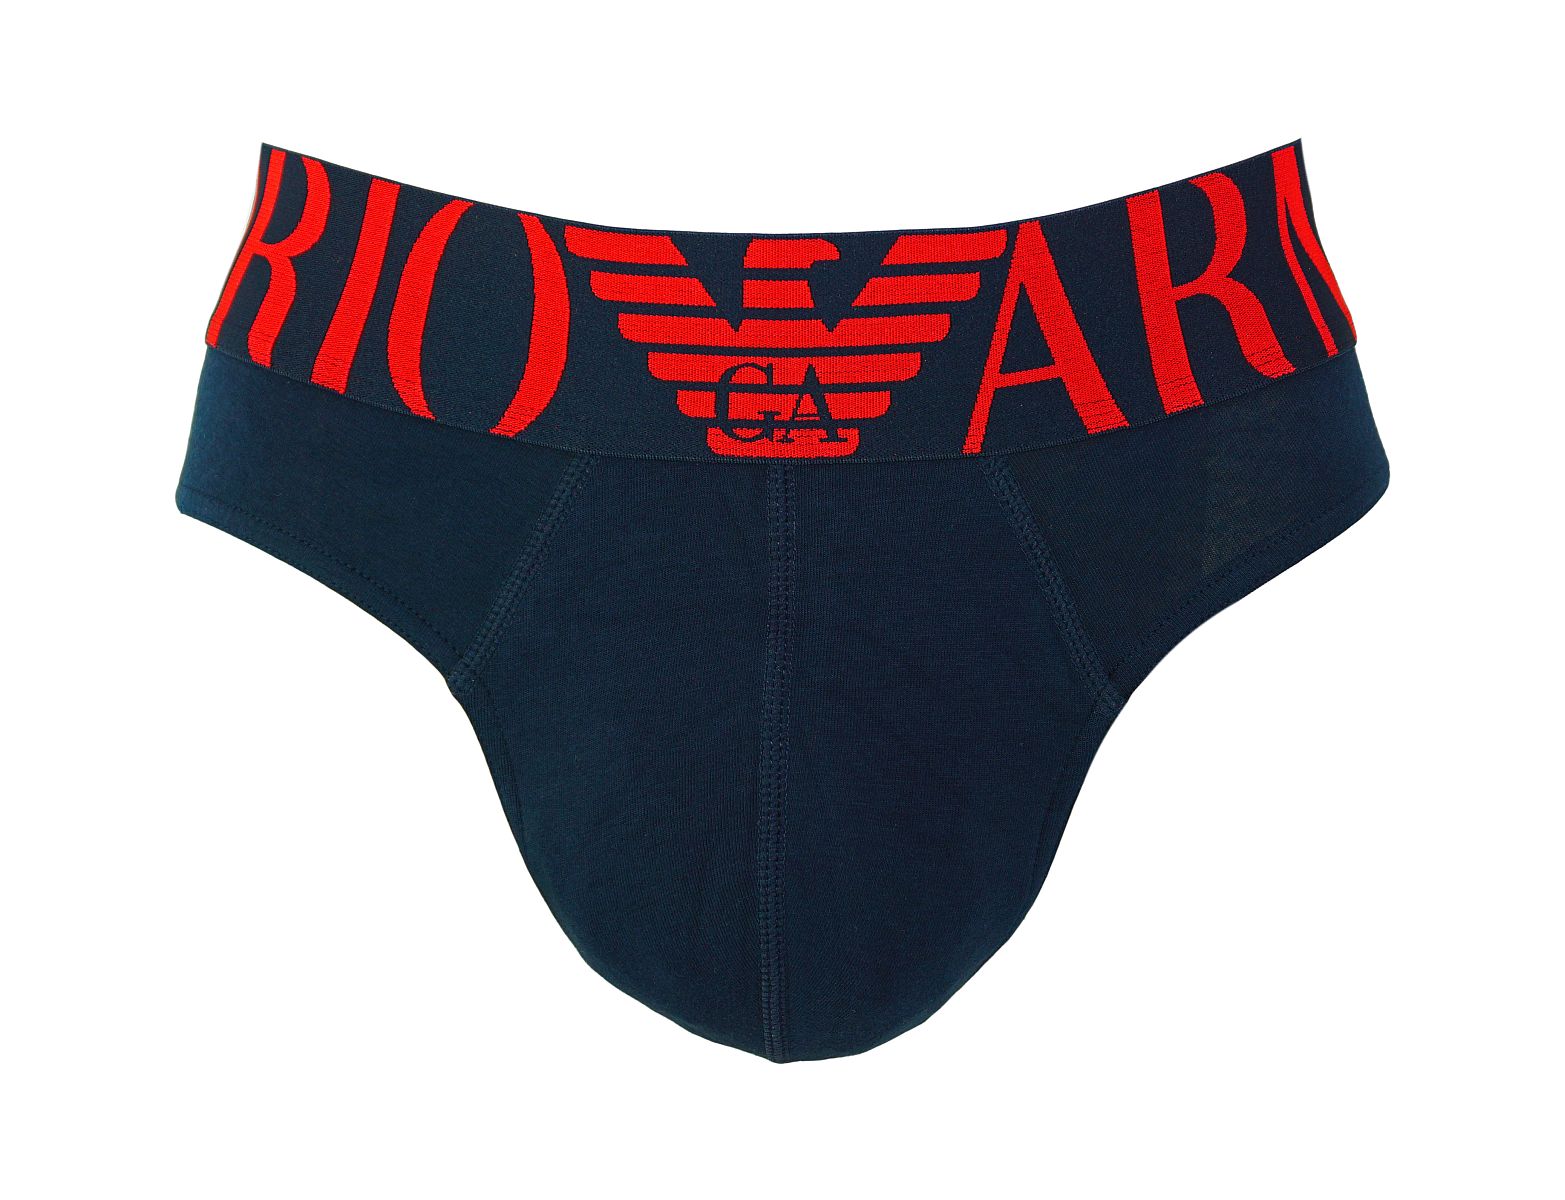 Emporio Armani Shorts Brief Unterhose 110814 8P516 00135 MARINE W18-EABR1